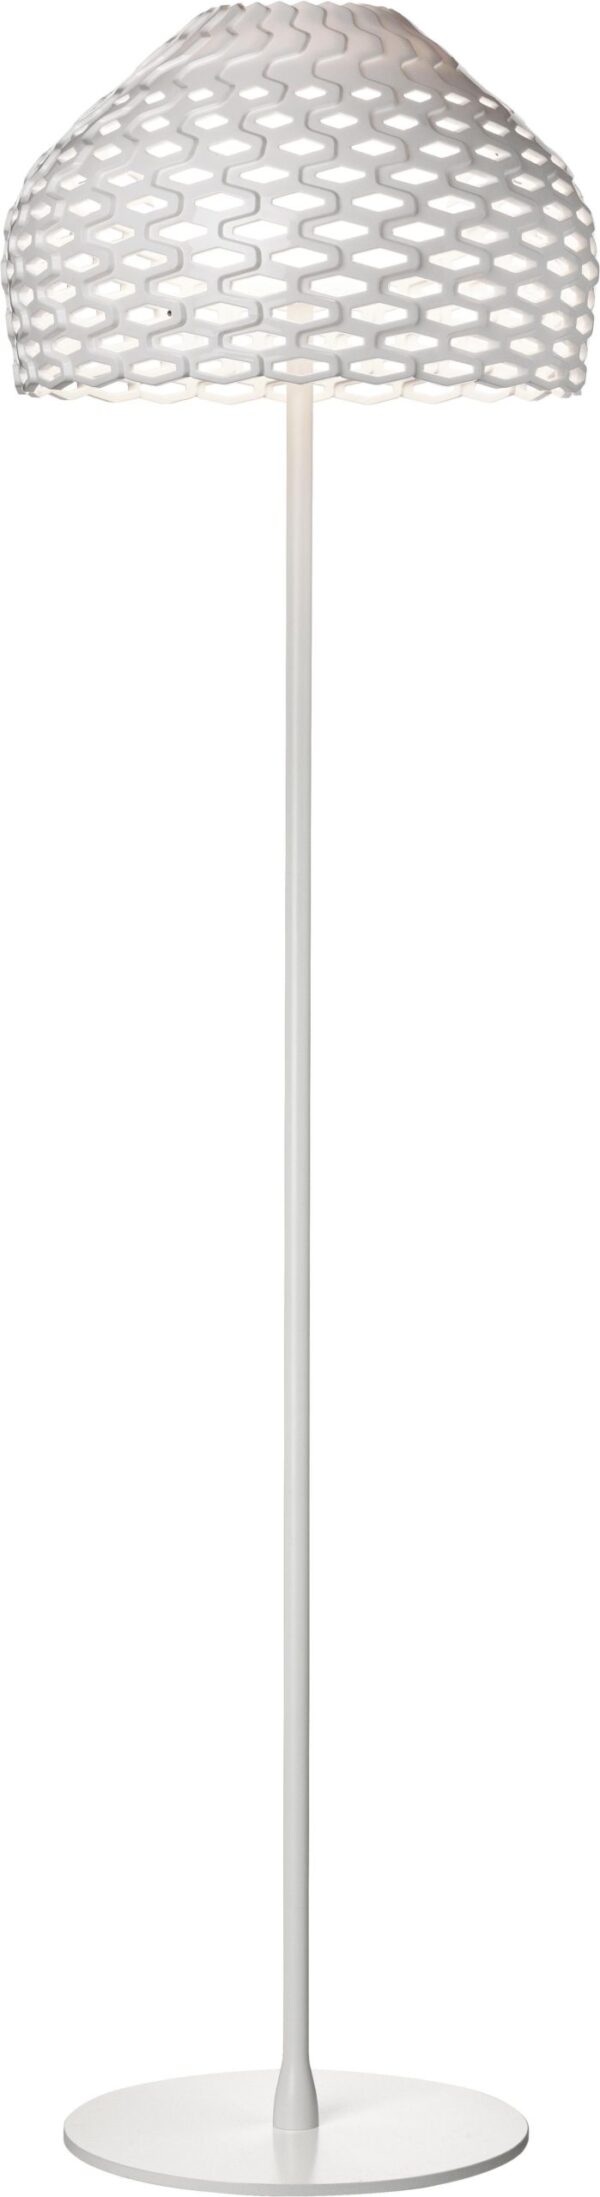 Tatou Lámpara de pie F - H 180 cm Blanco Flos Patricia Urquiola